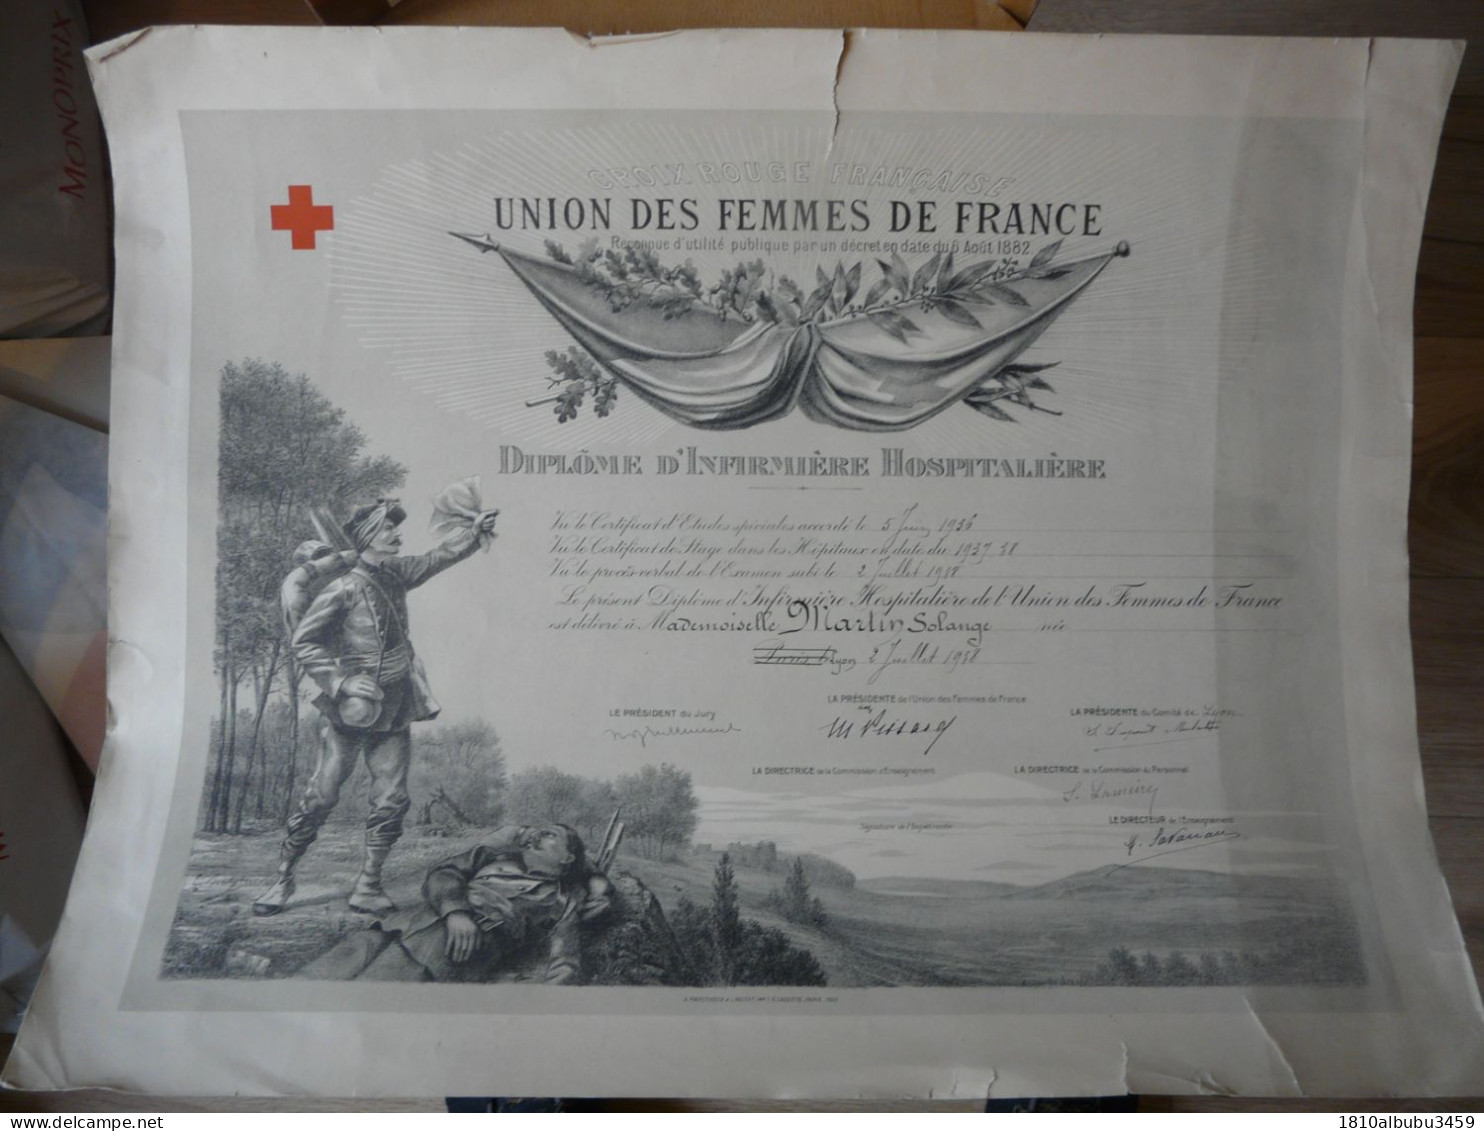 RARE - CROIX ROUGE FRANCAISE : Union Des Femmes De France - DIPLÔME D'INFIRMIERE HOSPITALIERE 1940 - Diplomi E Pagelle